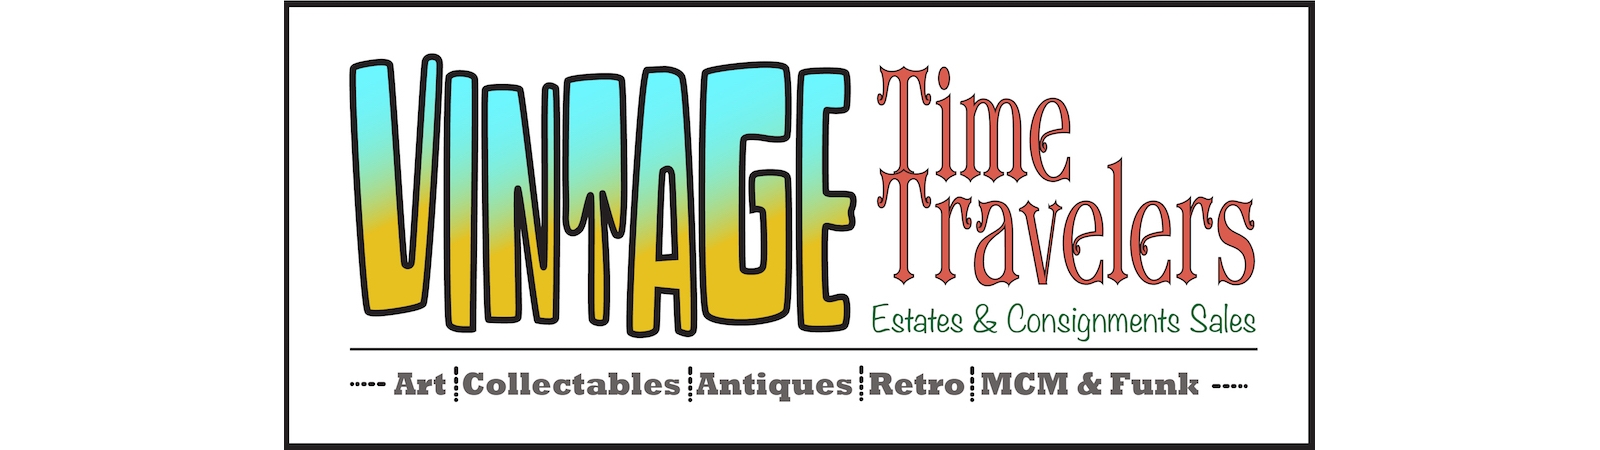 Vintage Time Travelers | AuctionNinja